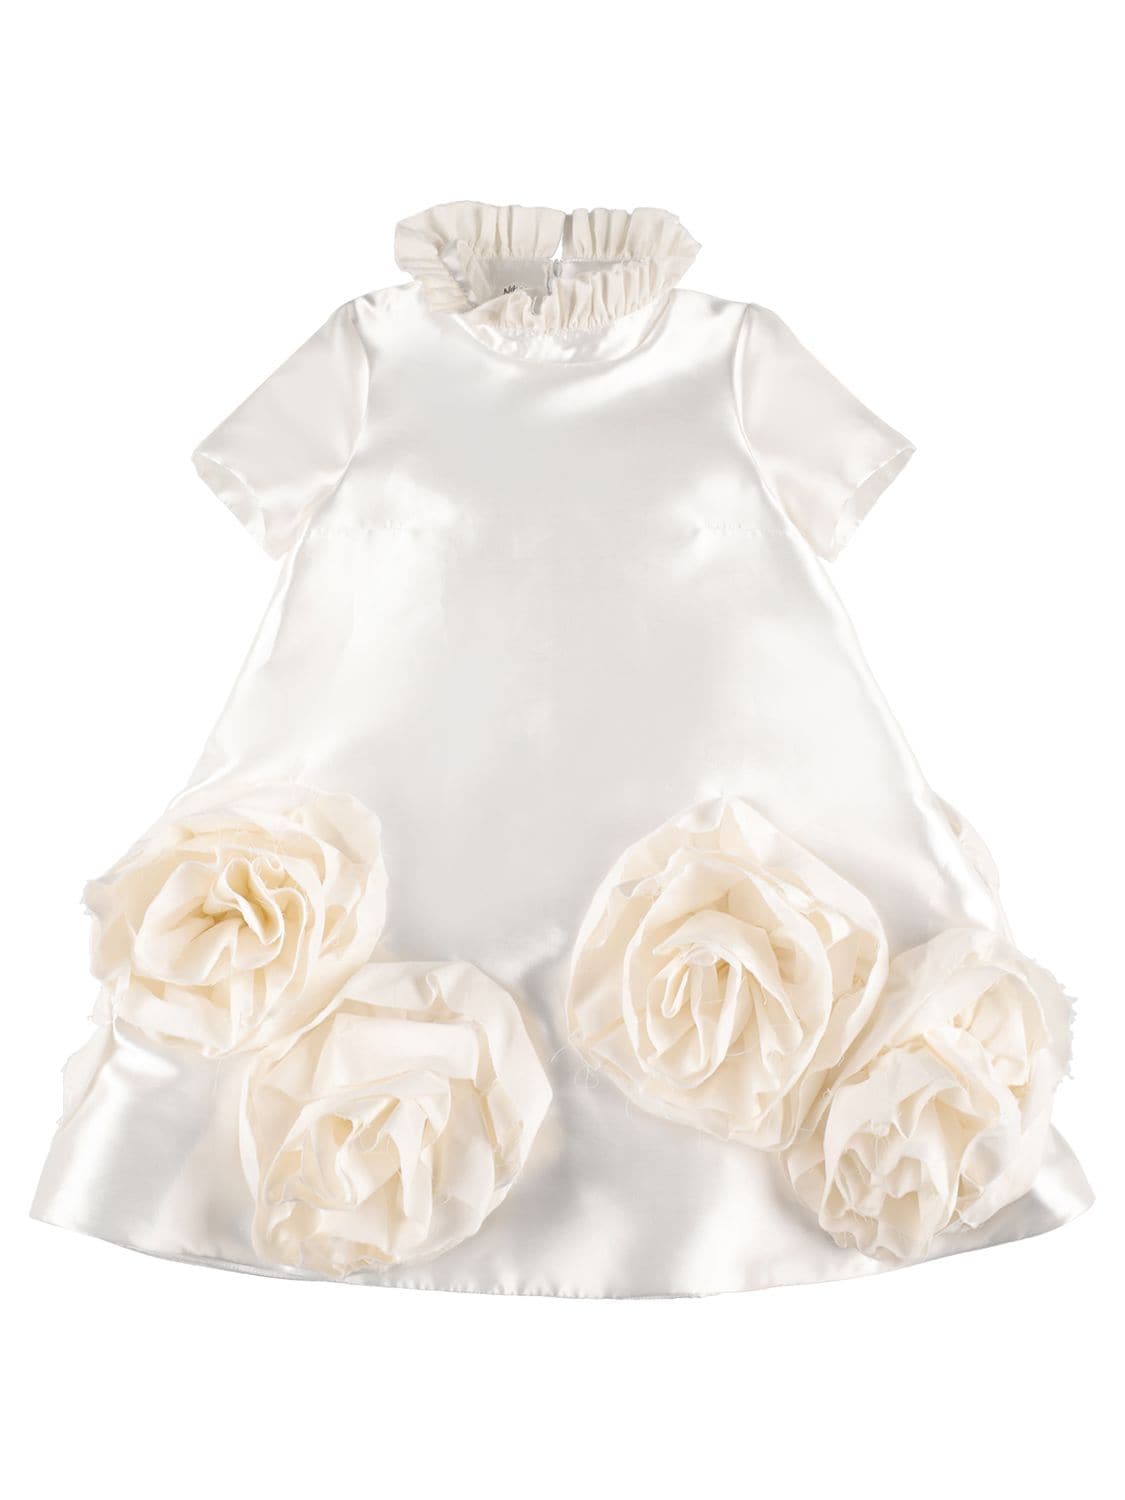 Nikolia Kids' Neoprene Midi Dress W/ Appliqués In White